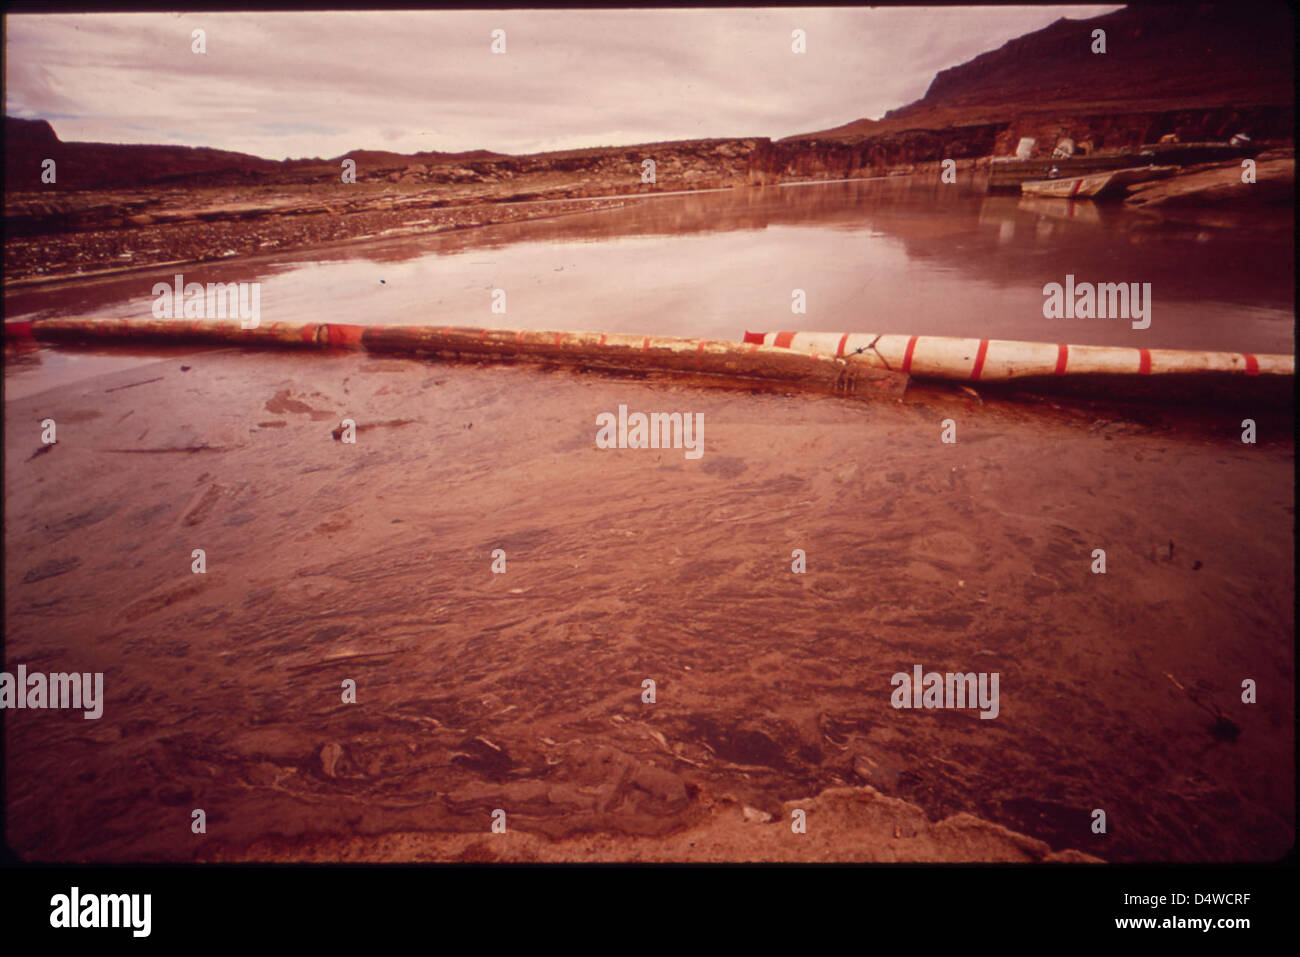 Boom journal retient une partie de l'eau polluée d'huile sous la surveillance de l'EPA - Nettoyage de la Rivière San Juan déversement de pétrole, 10/1972 Banque D'Images